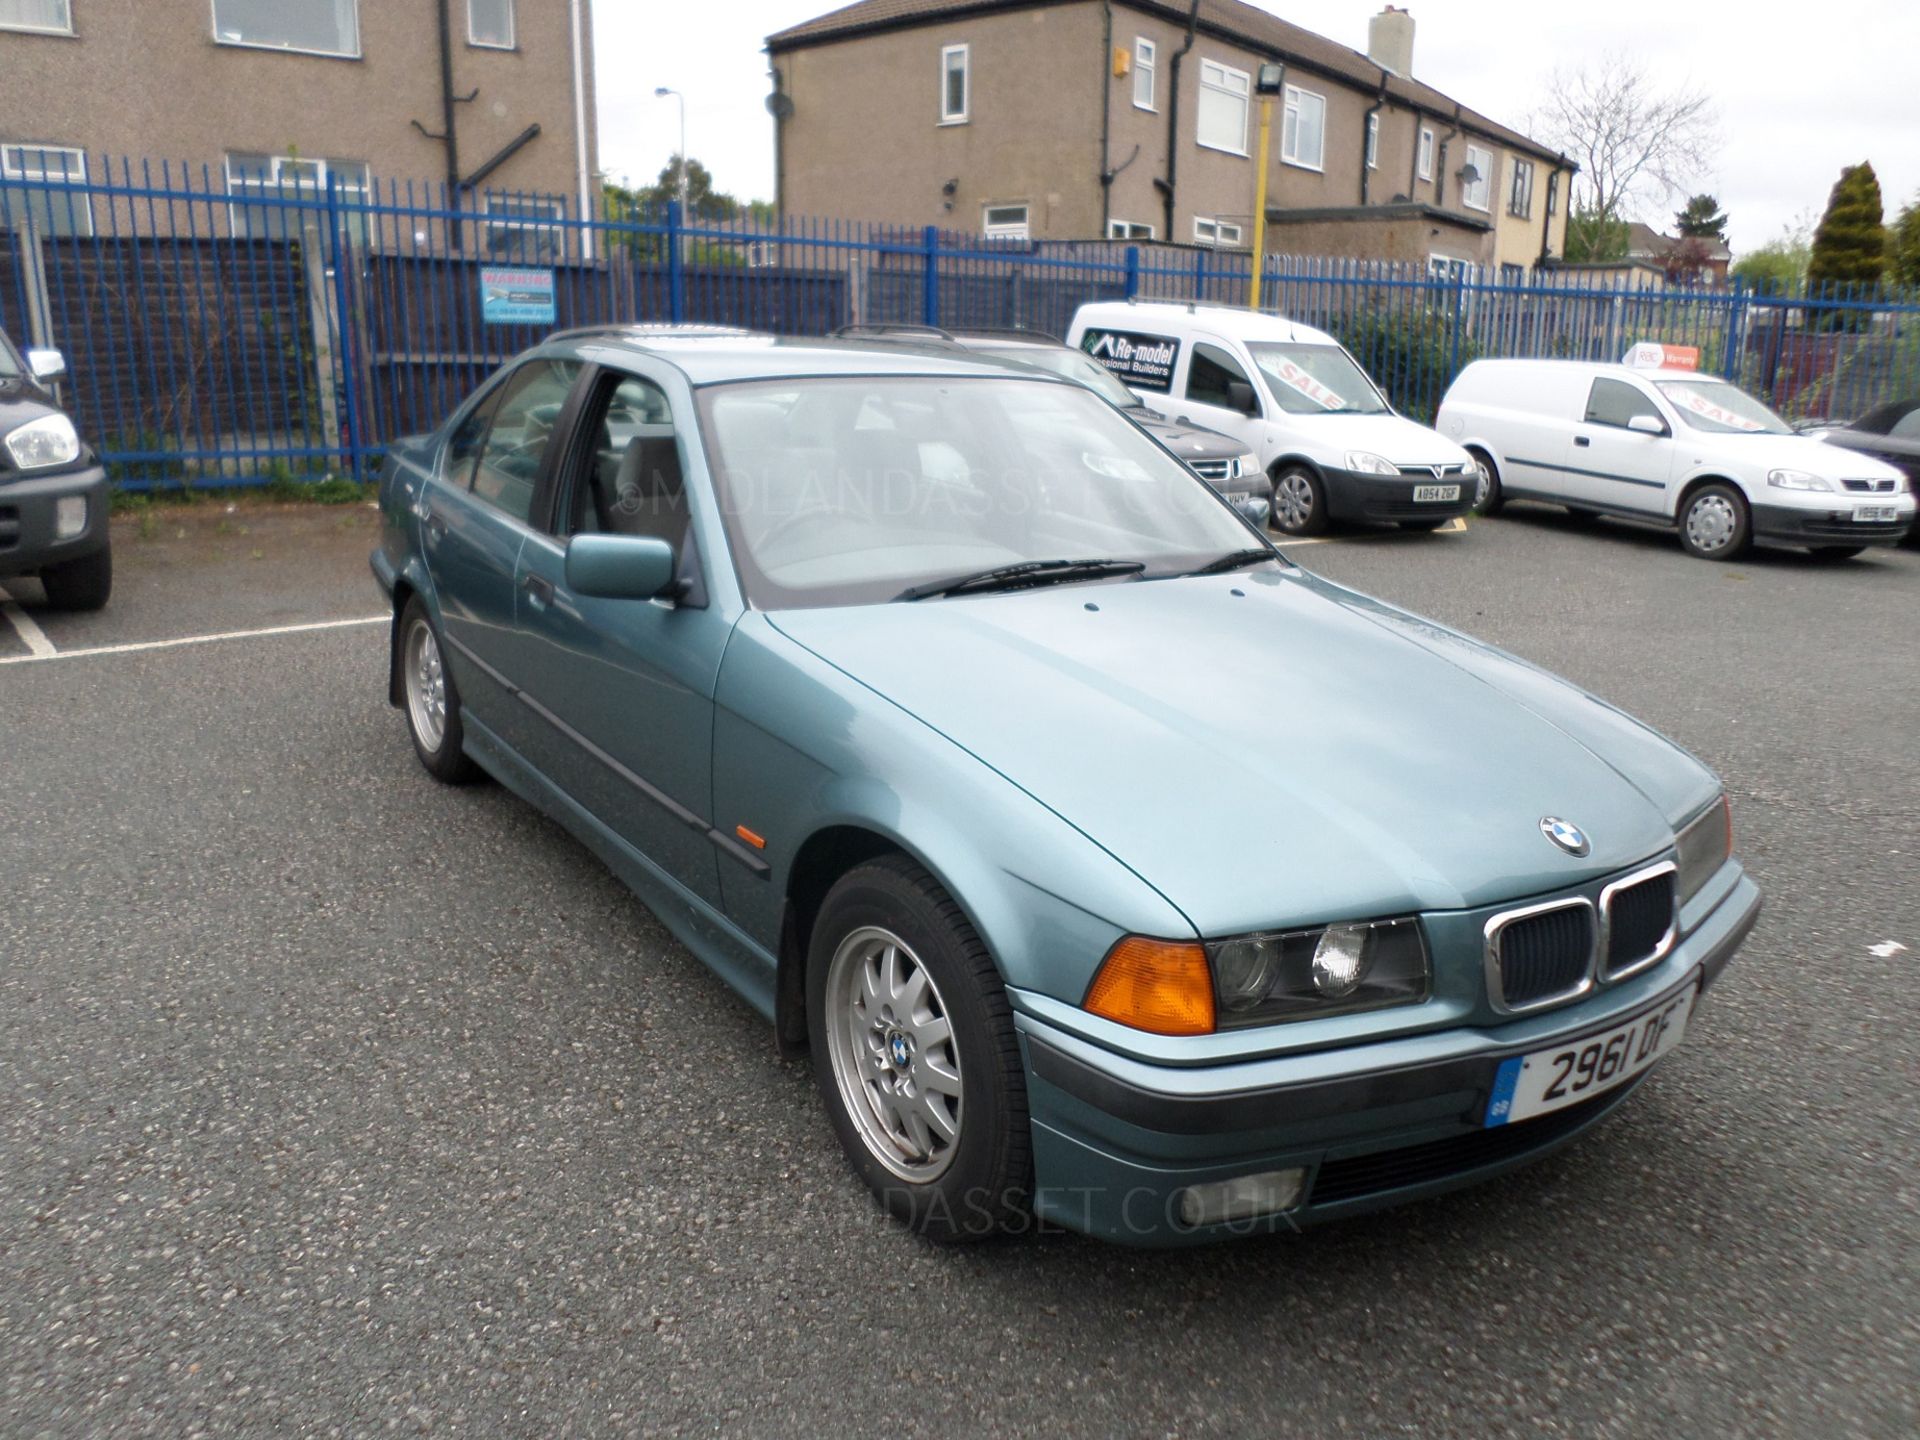 1997/P REG BMW 318 I SE 4 DOOR SALOON PETROL *NO VAT*